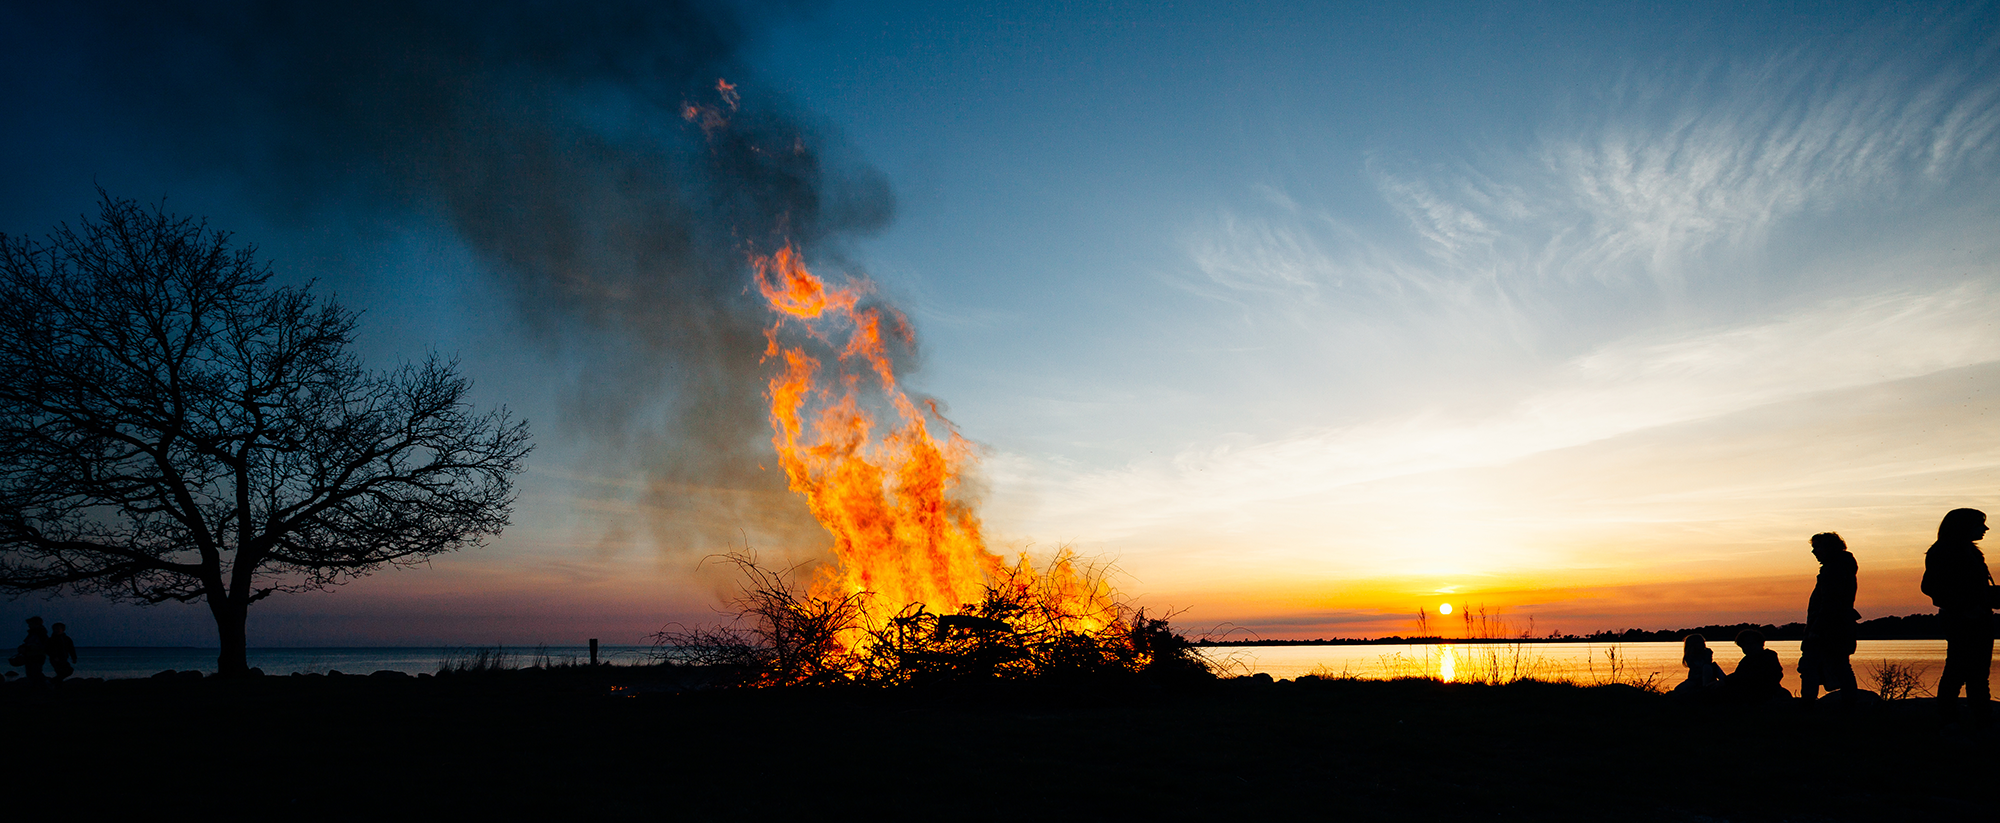 Bilden visar en större brasa som brinner vid en strandkant. Det är solnedgång.